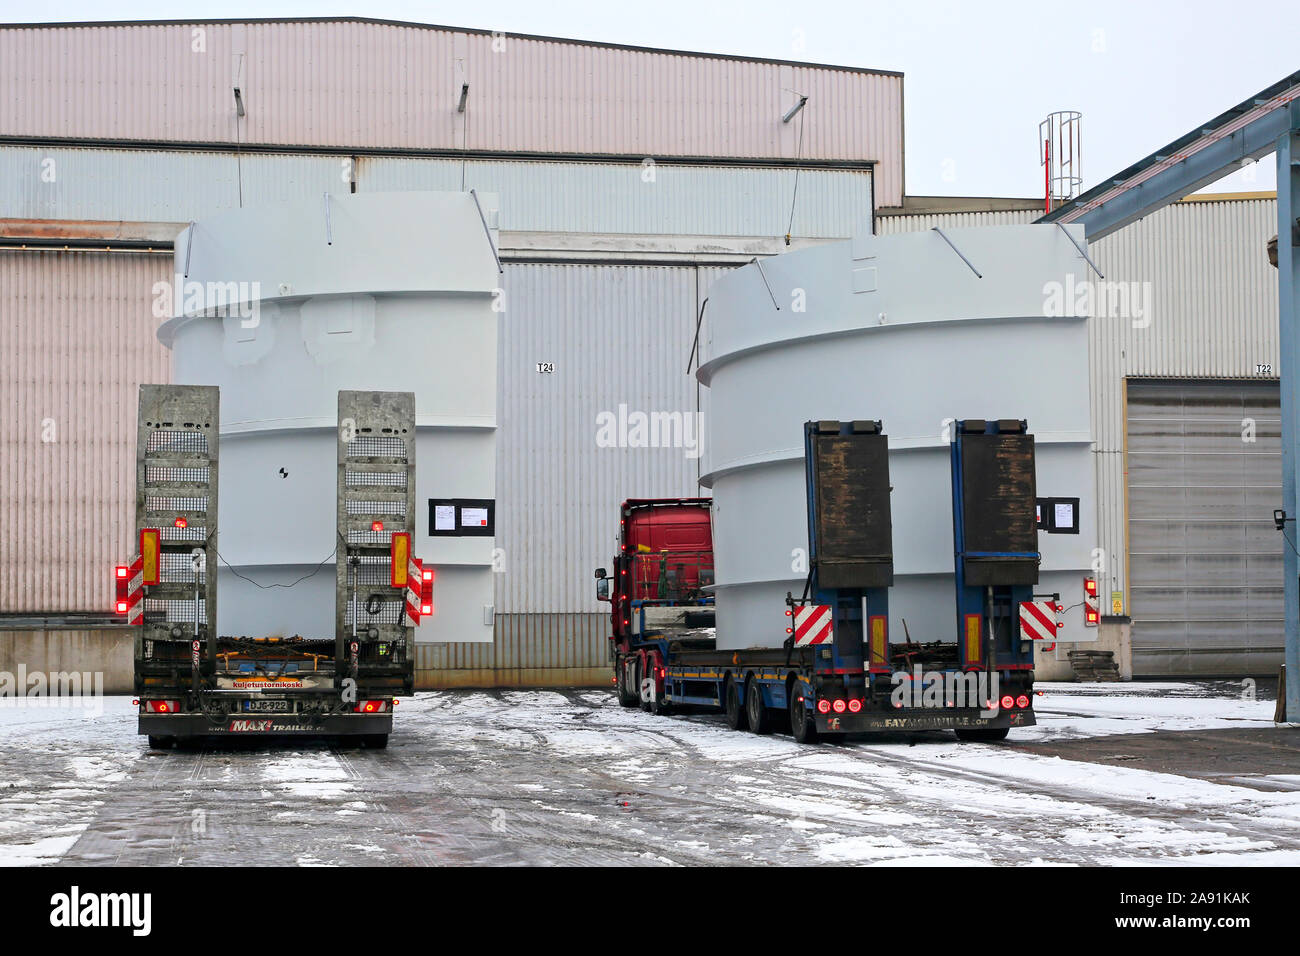 Zwei übergroße Ladung transportiert auf der Ladefläche von Factory. Die vor Ort gefertigten Stahlrahmen Schiff von Finnland bis nach Chile. Salo, Finnland. Nov 8, 2019. Stockfoto